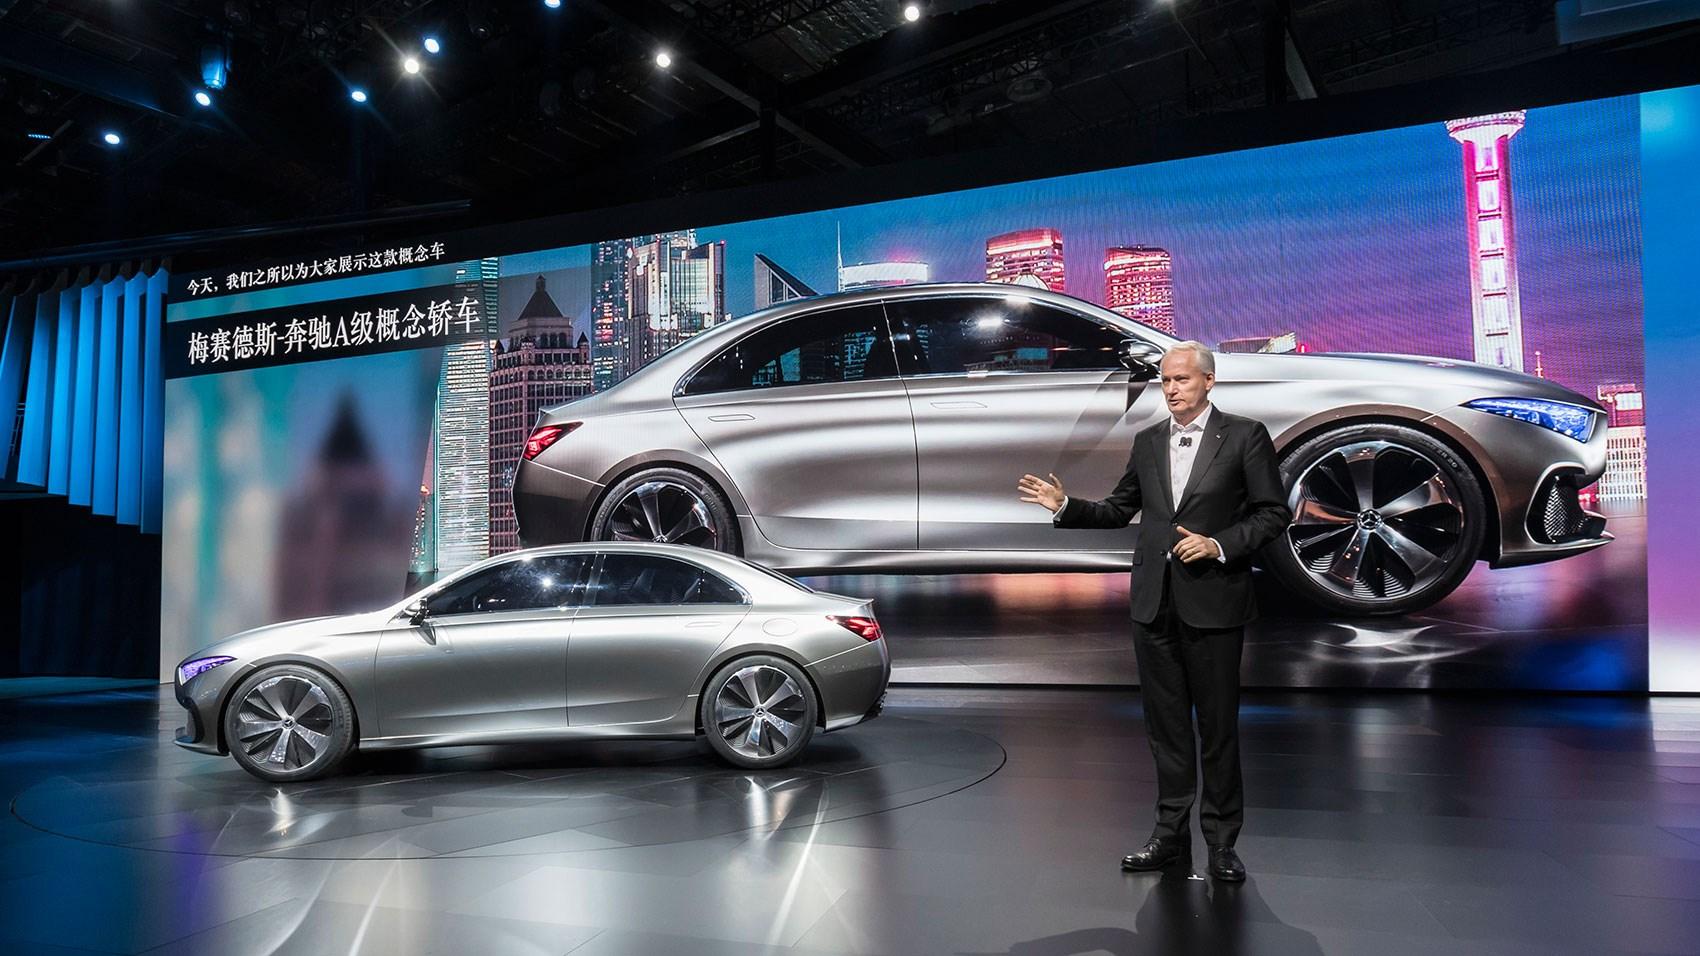 Futuristički automobili predstavljeni u Kini